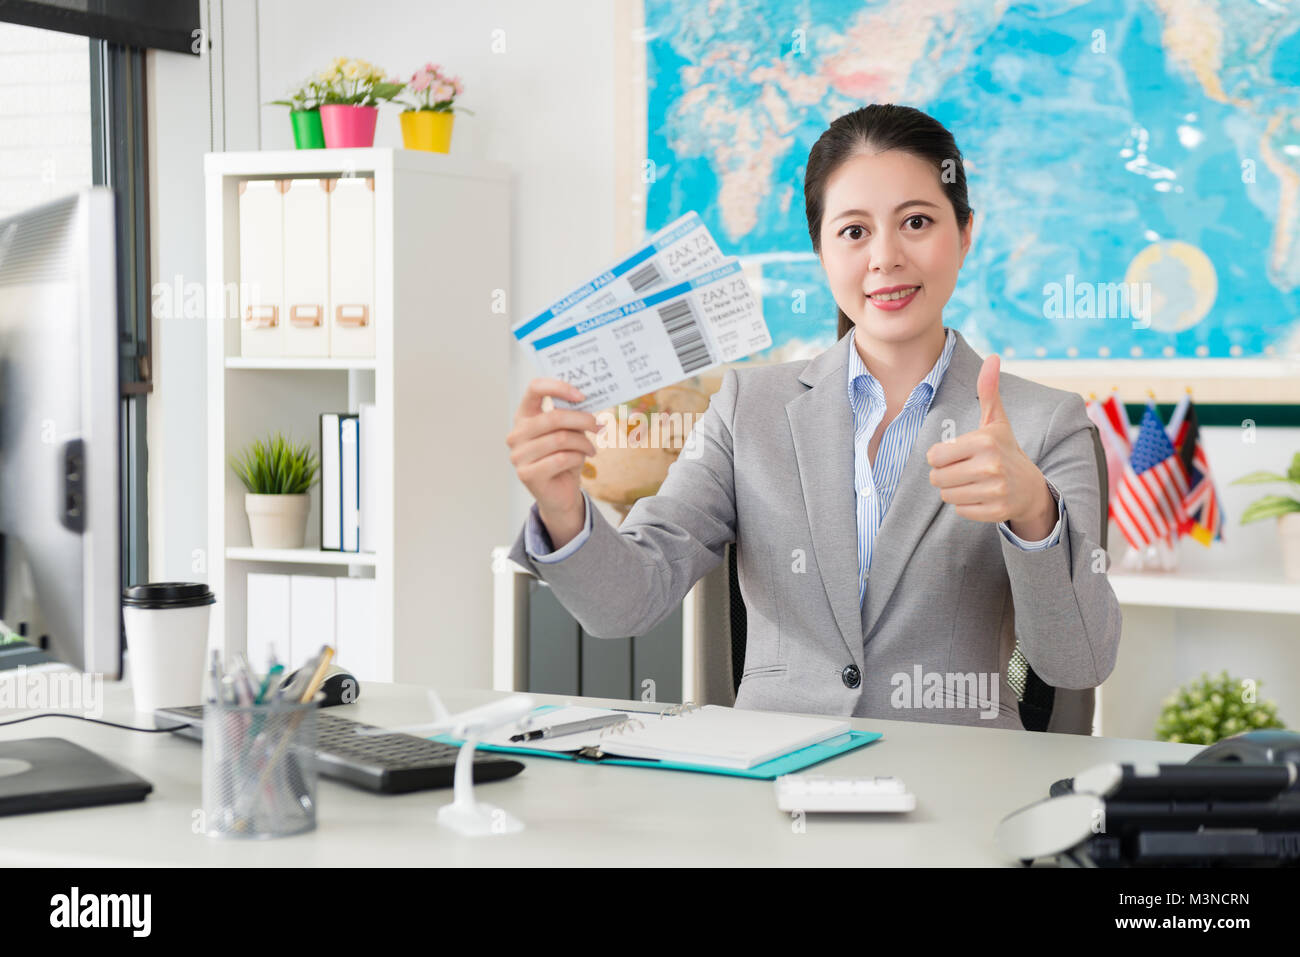 Professionelle junge weibliche Reisebüro Büroangestellter holding Airline Tickets zu Kamera Gesicht und zeigt "Daumen hoch" Geste. Stockfoto